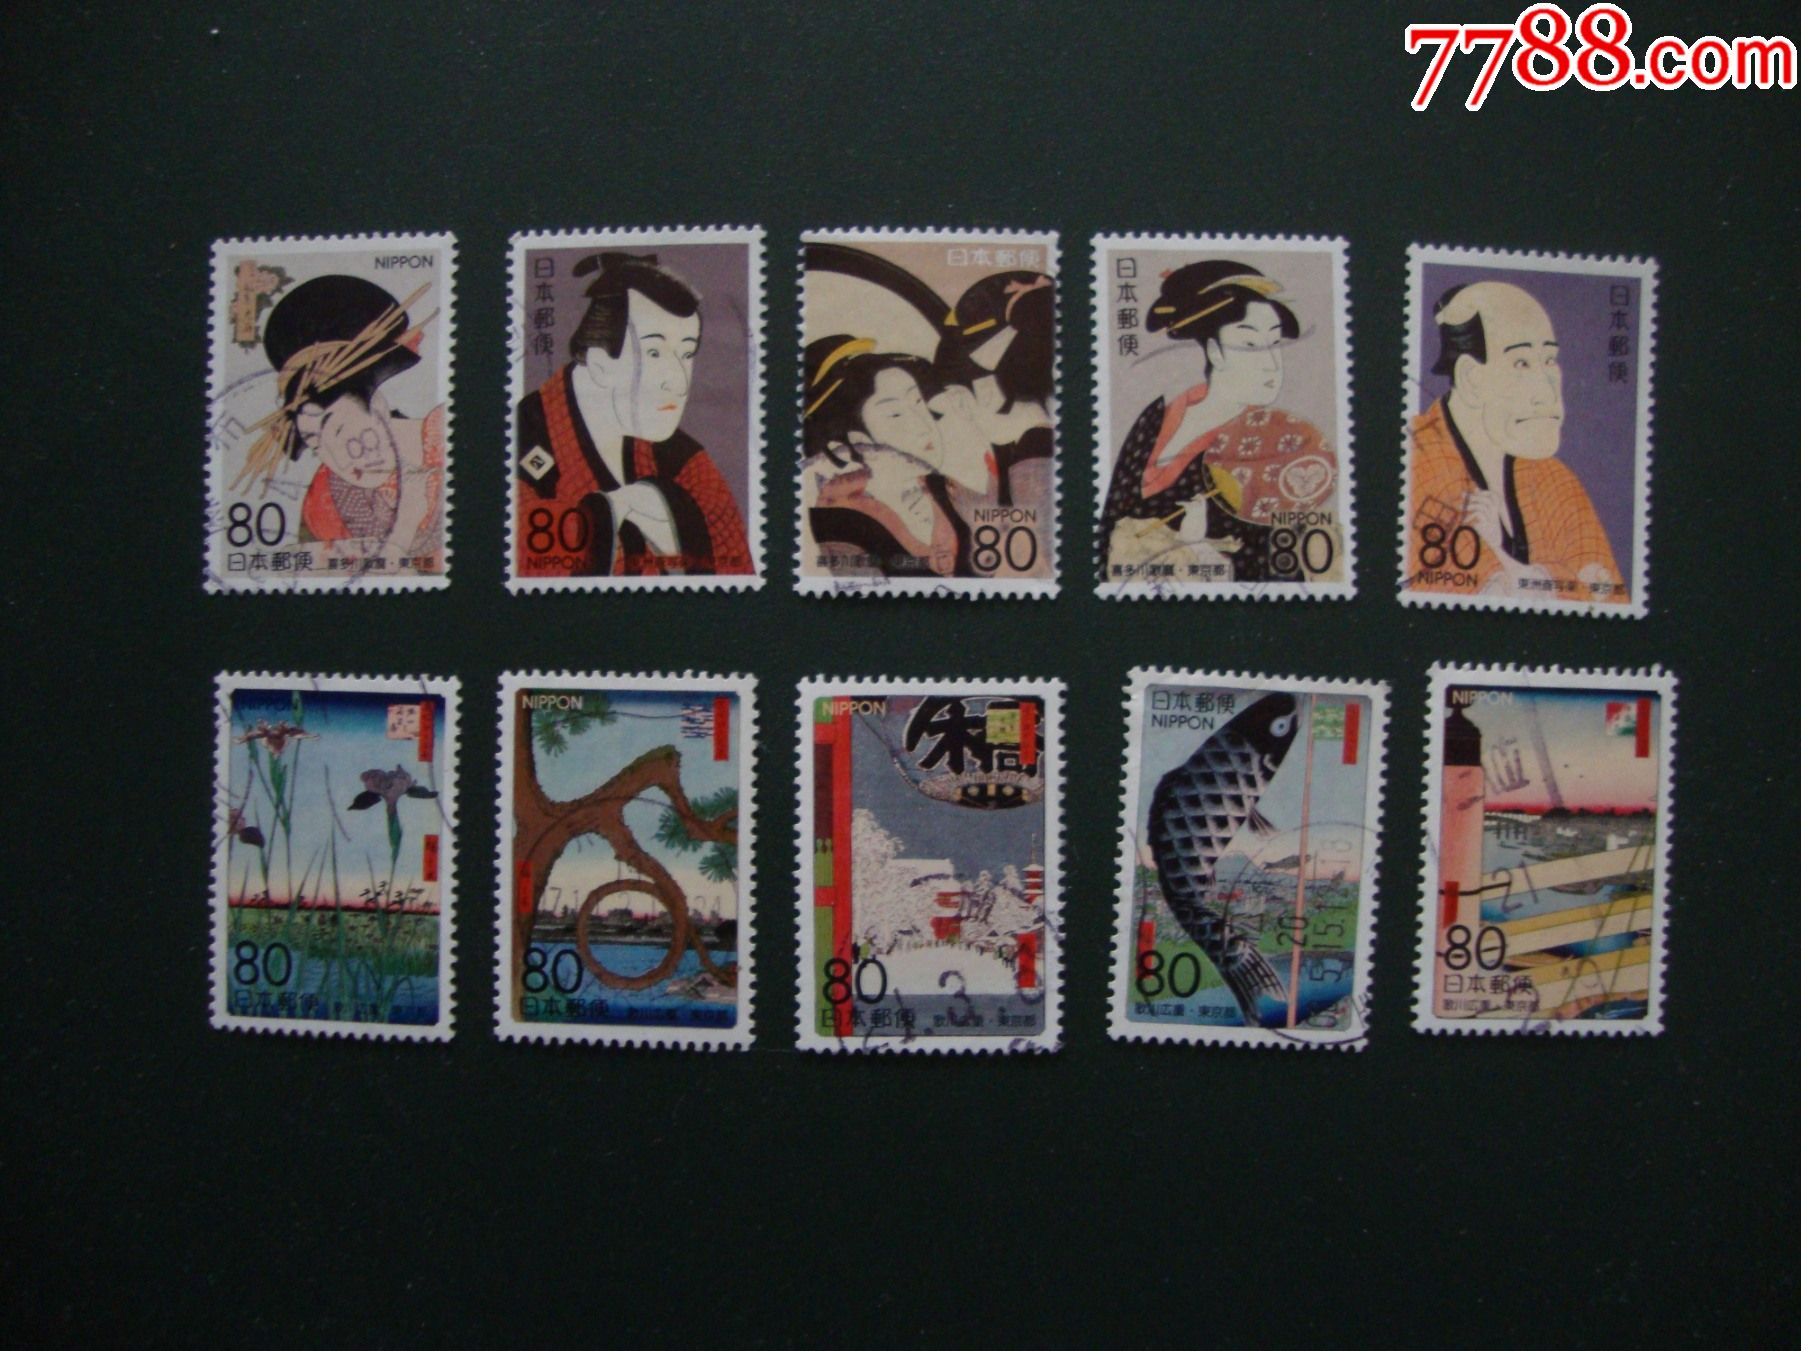 日本邮票-地方版浮世绘第一集10全